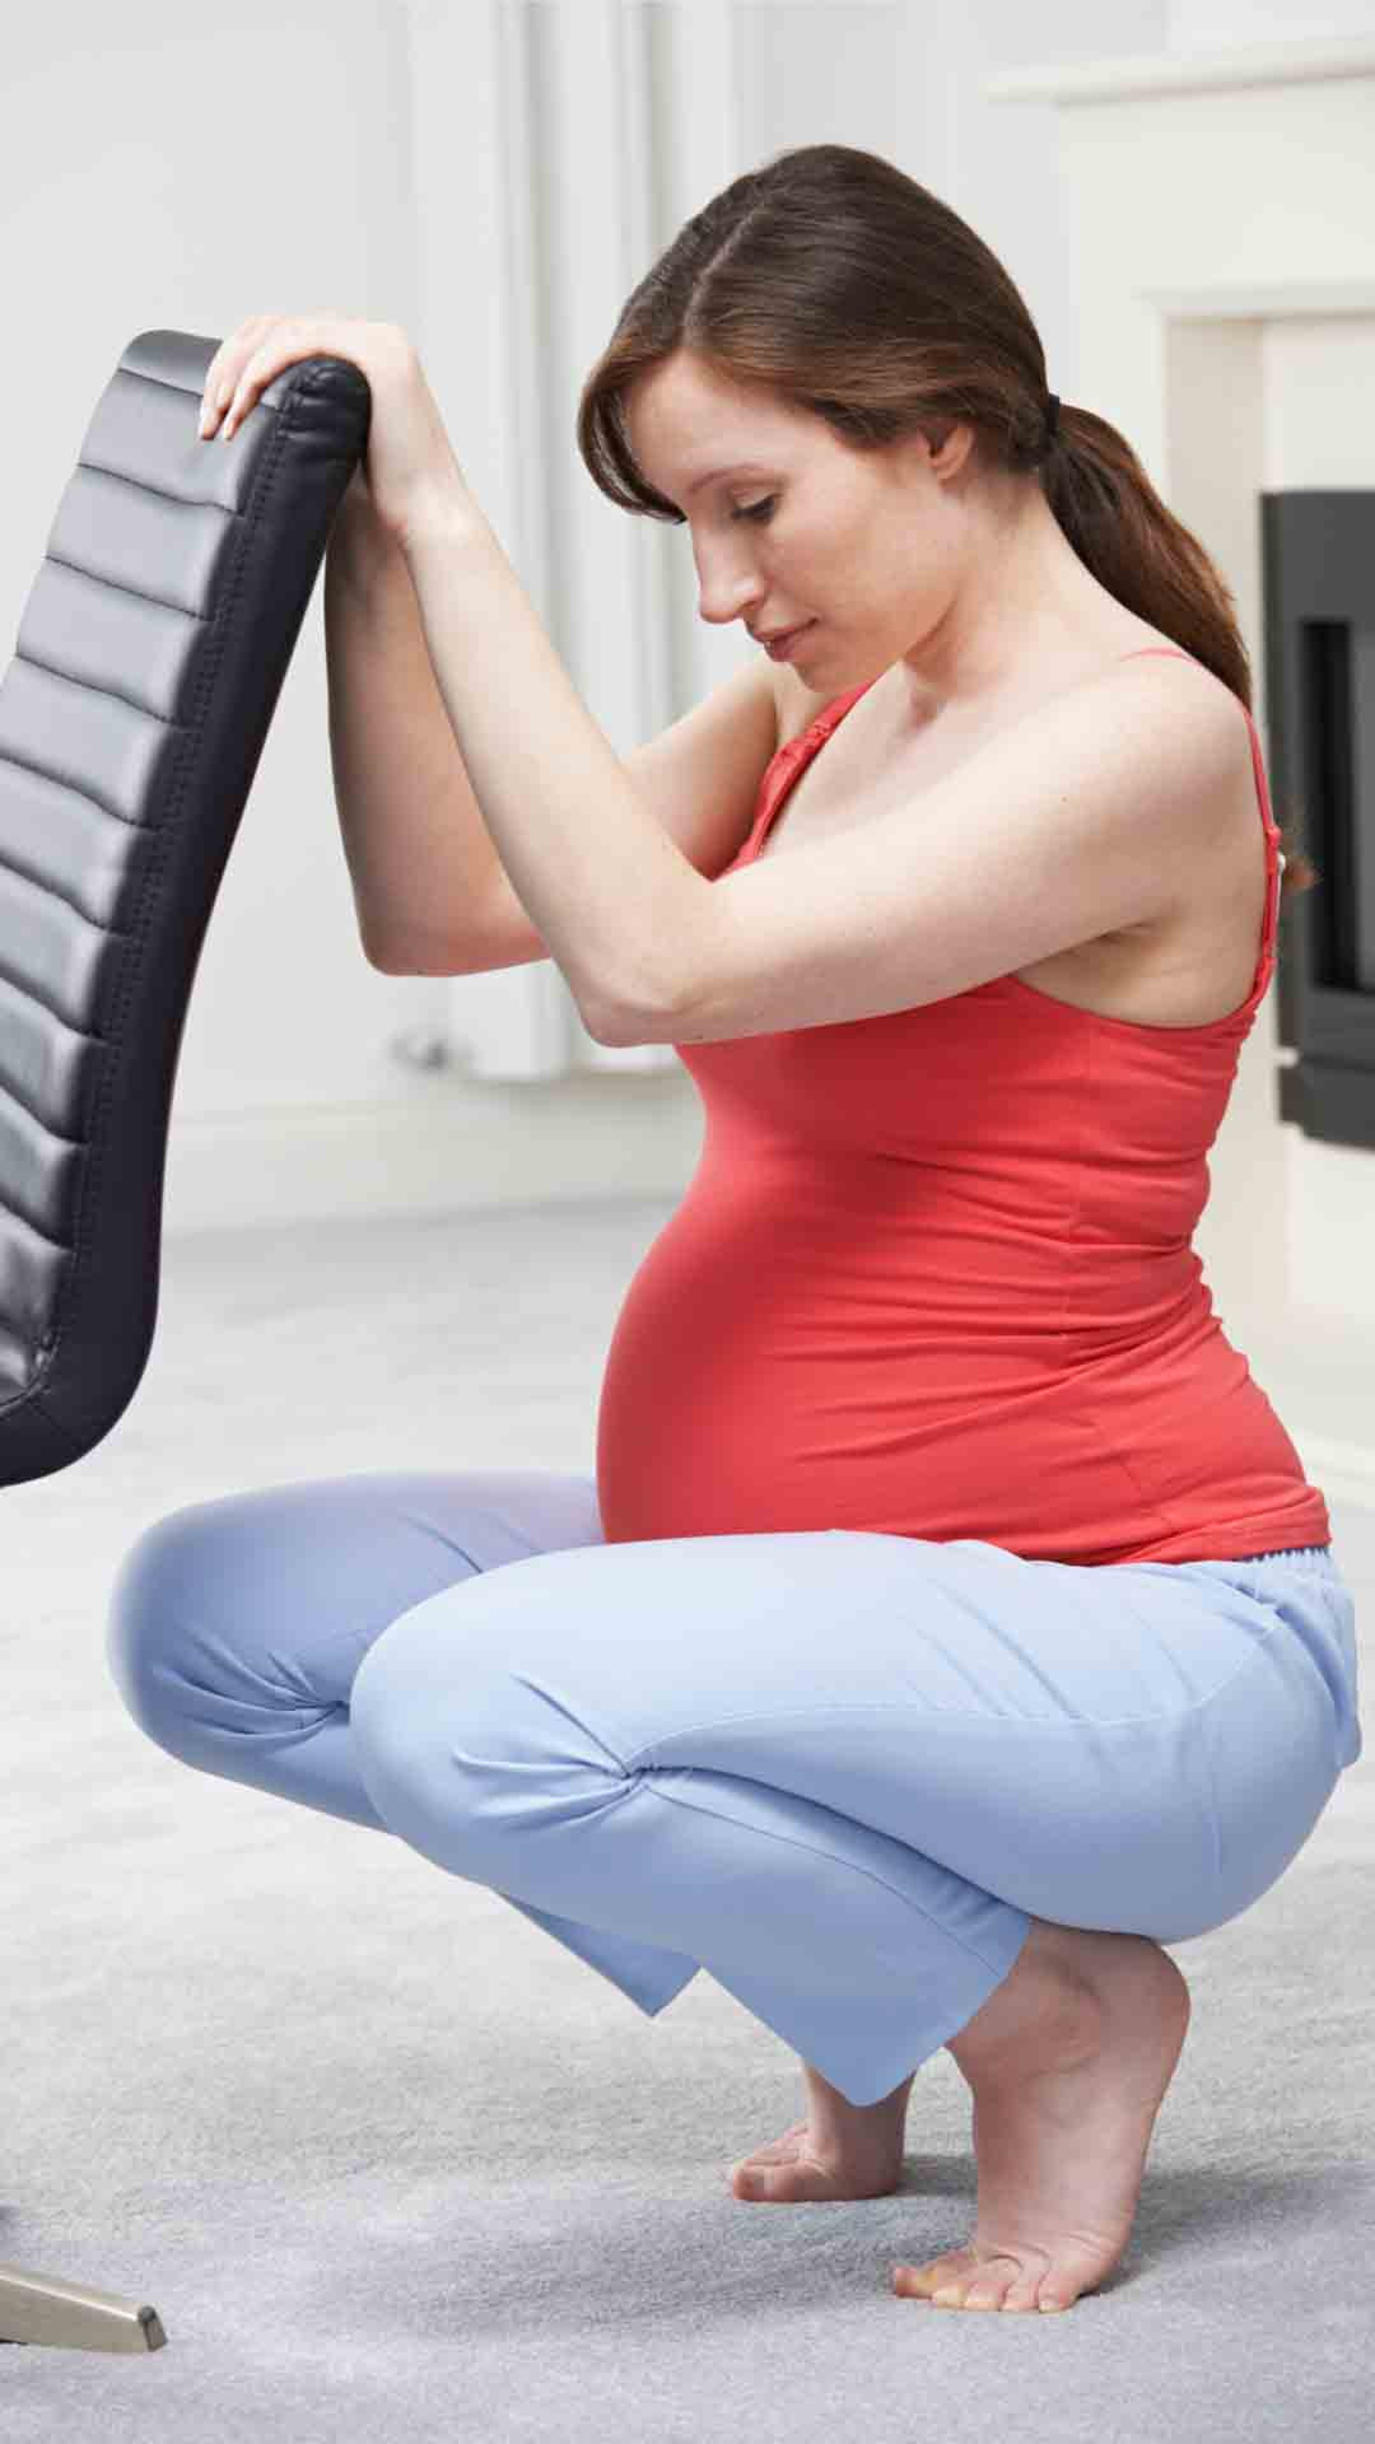 فوائد تمرين القرفصاء للحامل | مجلة سيدتي